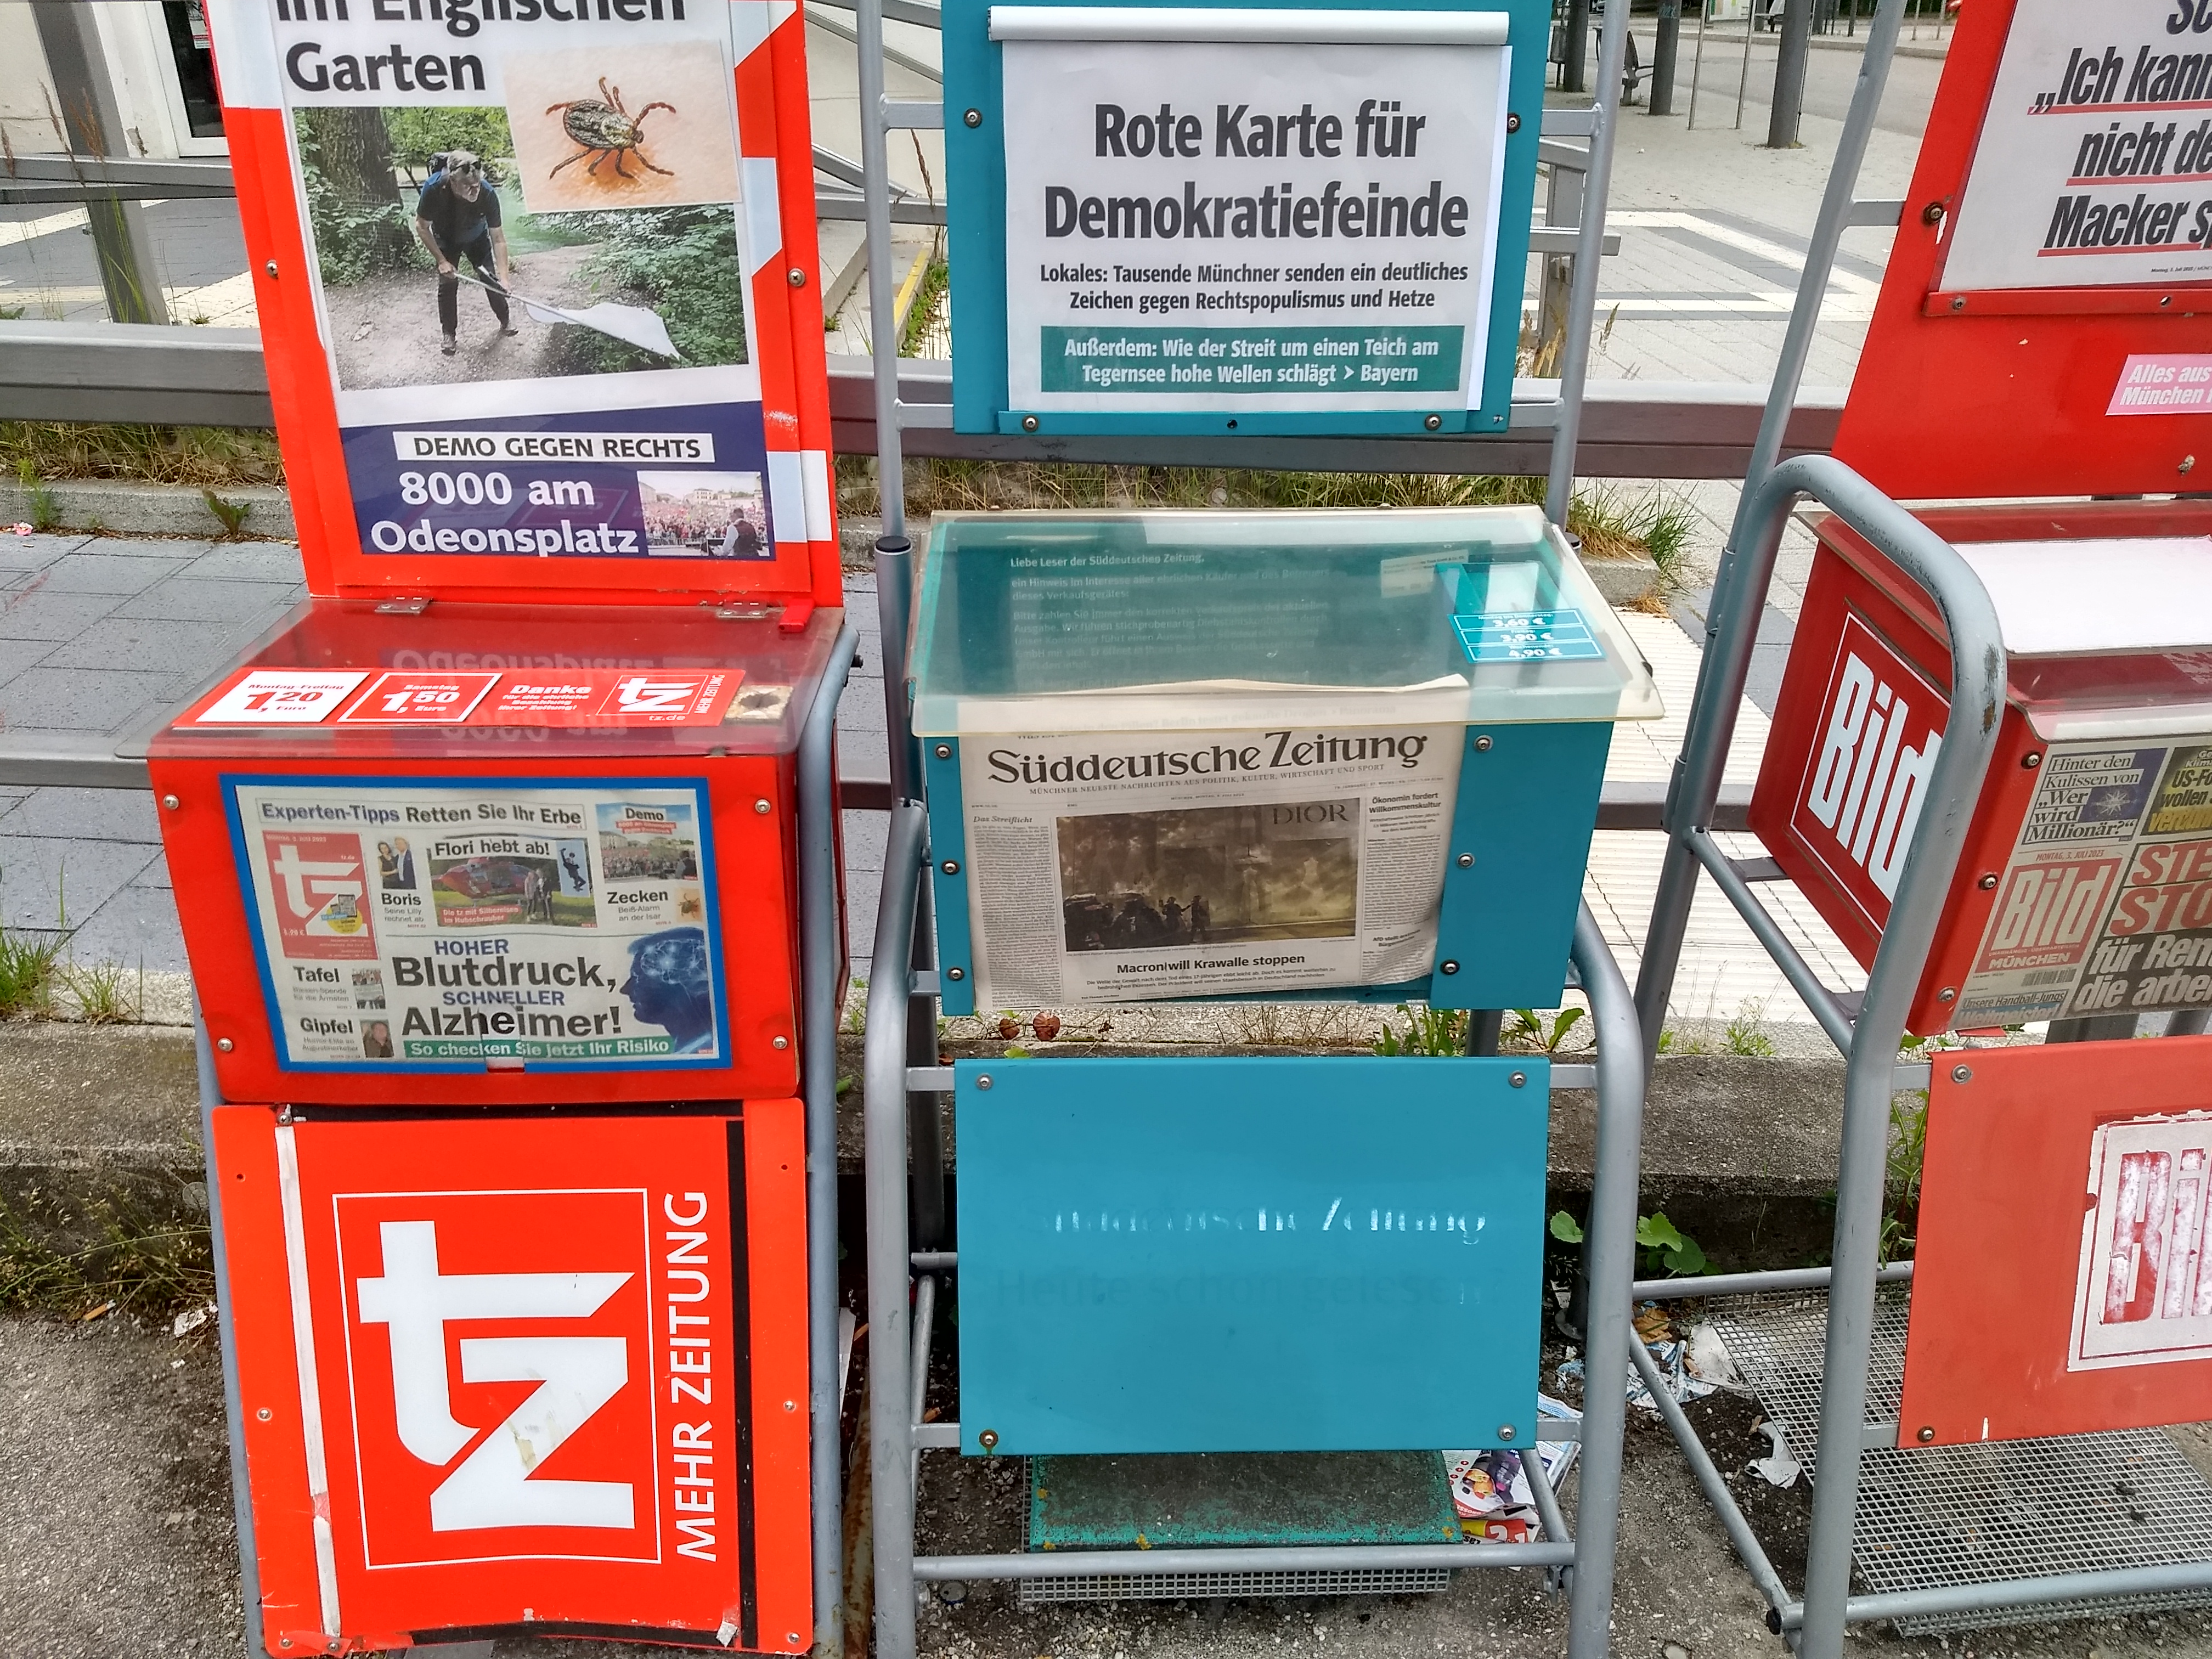 Что почем в немецких супермаркетах. Мюнхенские заметки украинского беженца